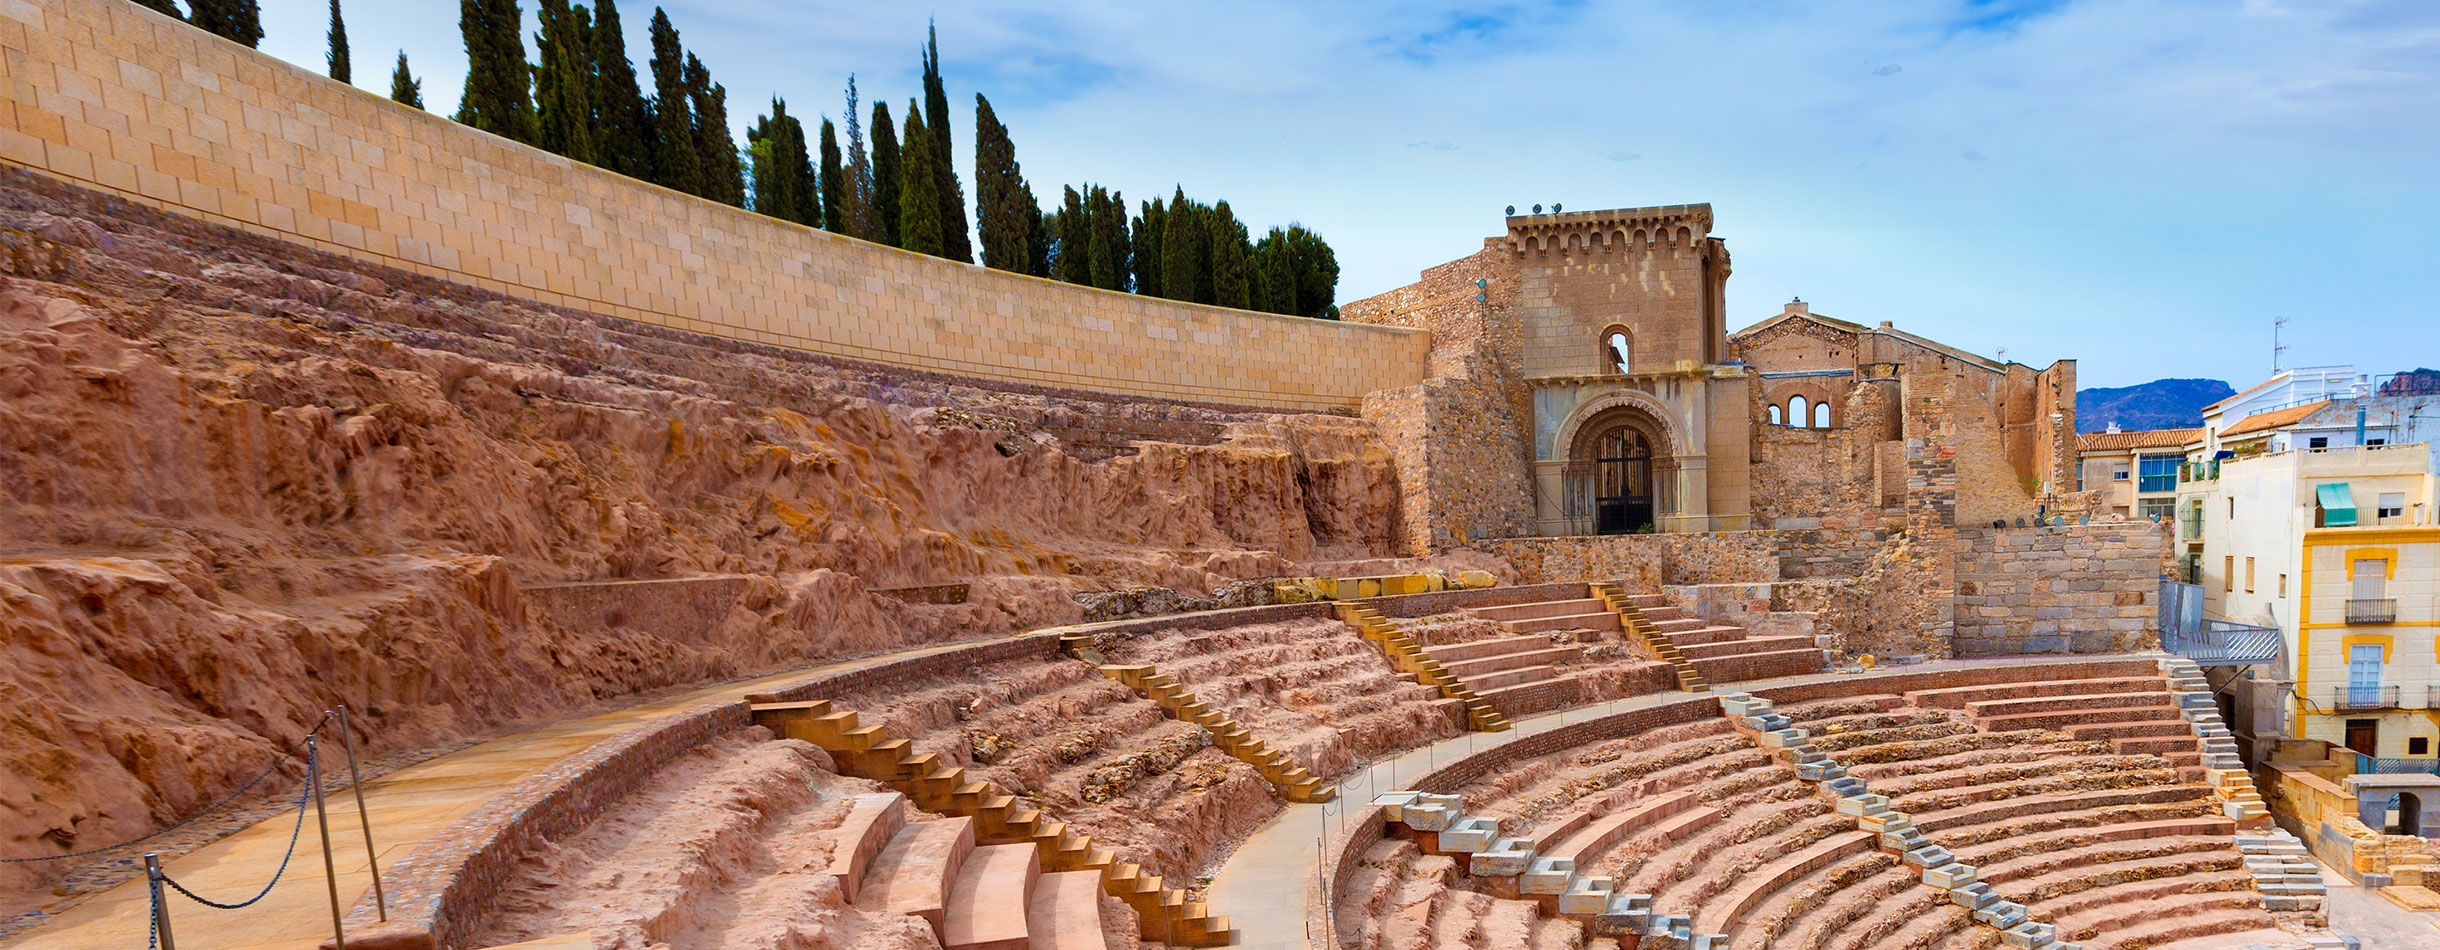 Cartagena Roman Amphitheater in Murcia at Spain